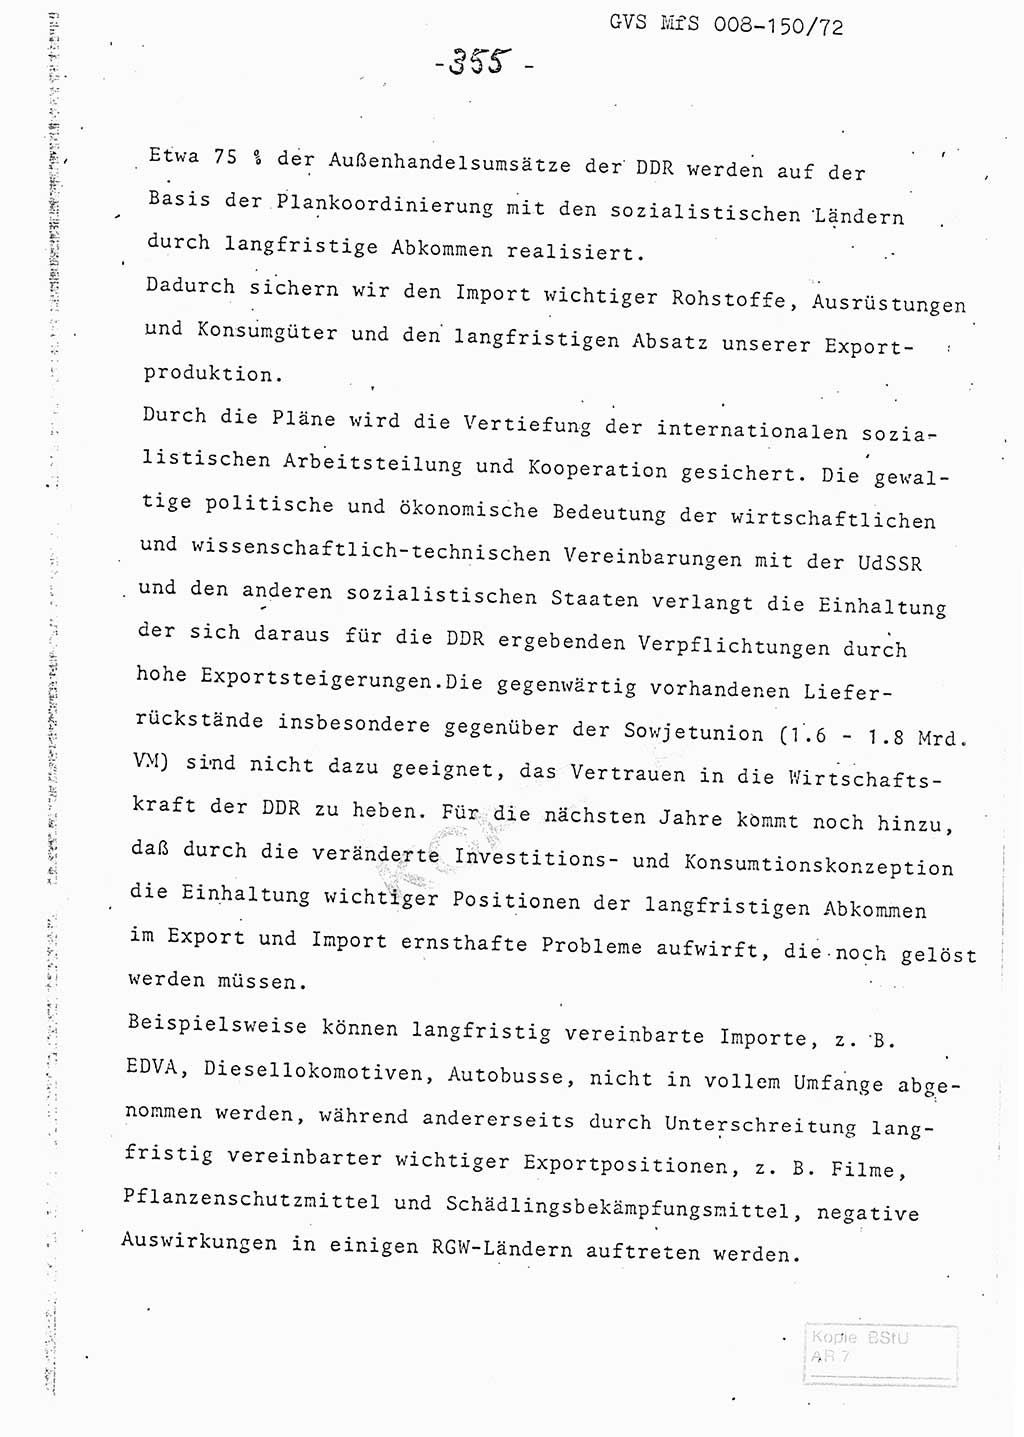 Referat (Entwurf) des Genossen Minister (Generaloberst Erich Mielke) auf der Dienstkonferenz 1972, Ministerium für Staatssicherheit (MfS) [Deutsche Demokratische Republik (DDR)], Der Minister, Geheime Verschlußsache (GVS) 008-150/72, Berlin 25.2.1972, Seite 355 (Ref. Entw. DK MfS DDR Min. GVS 008-150/72 1972, S. 355)